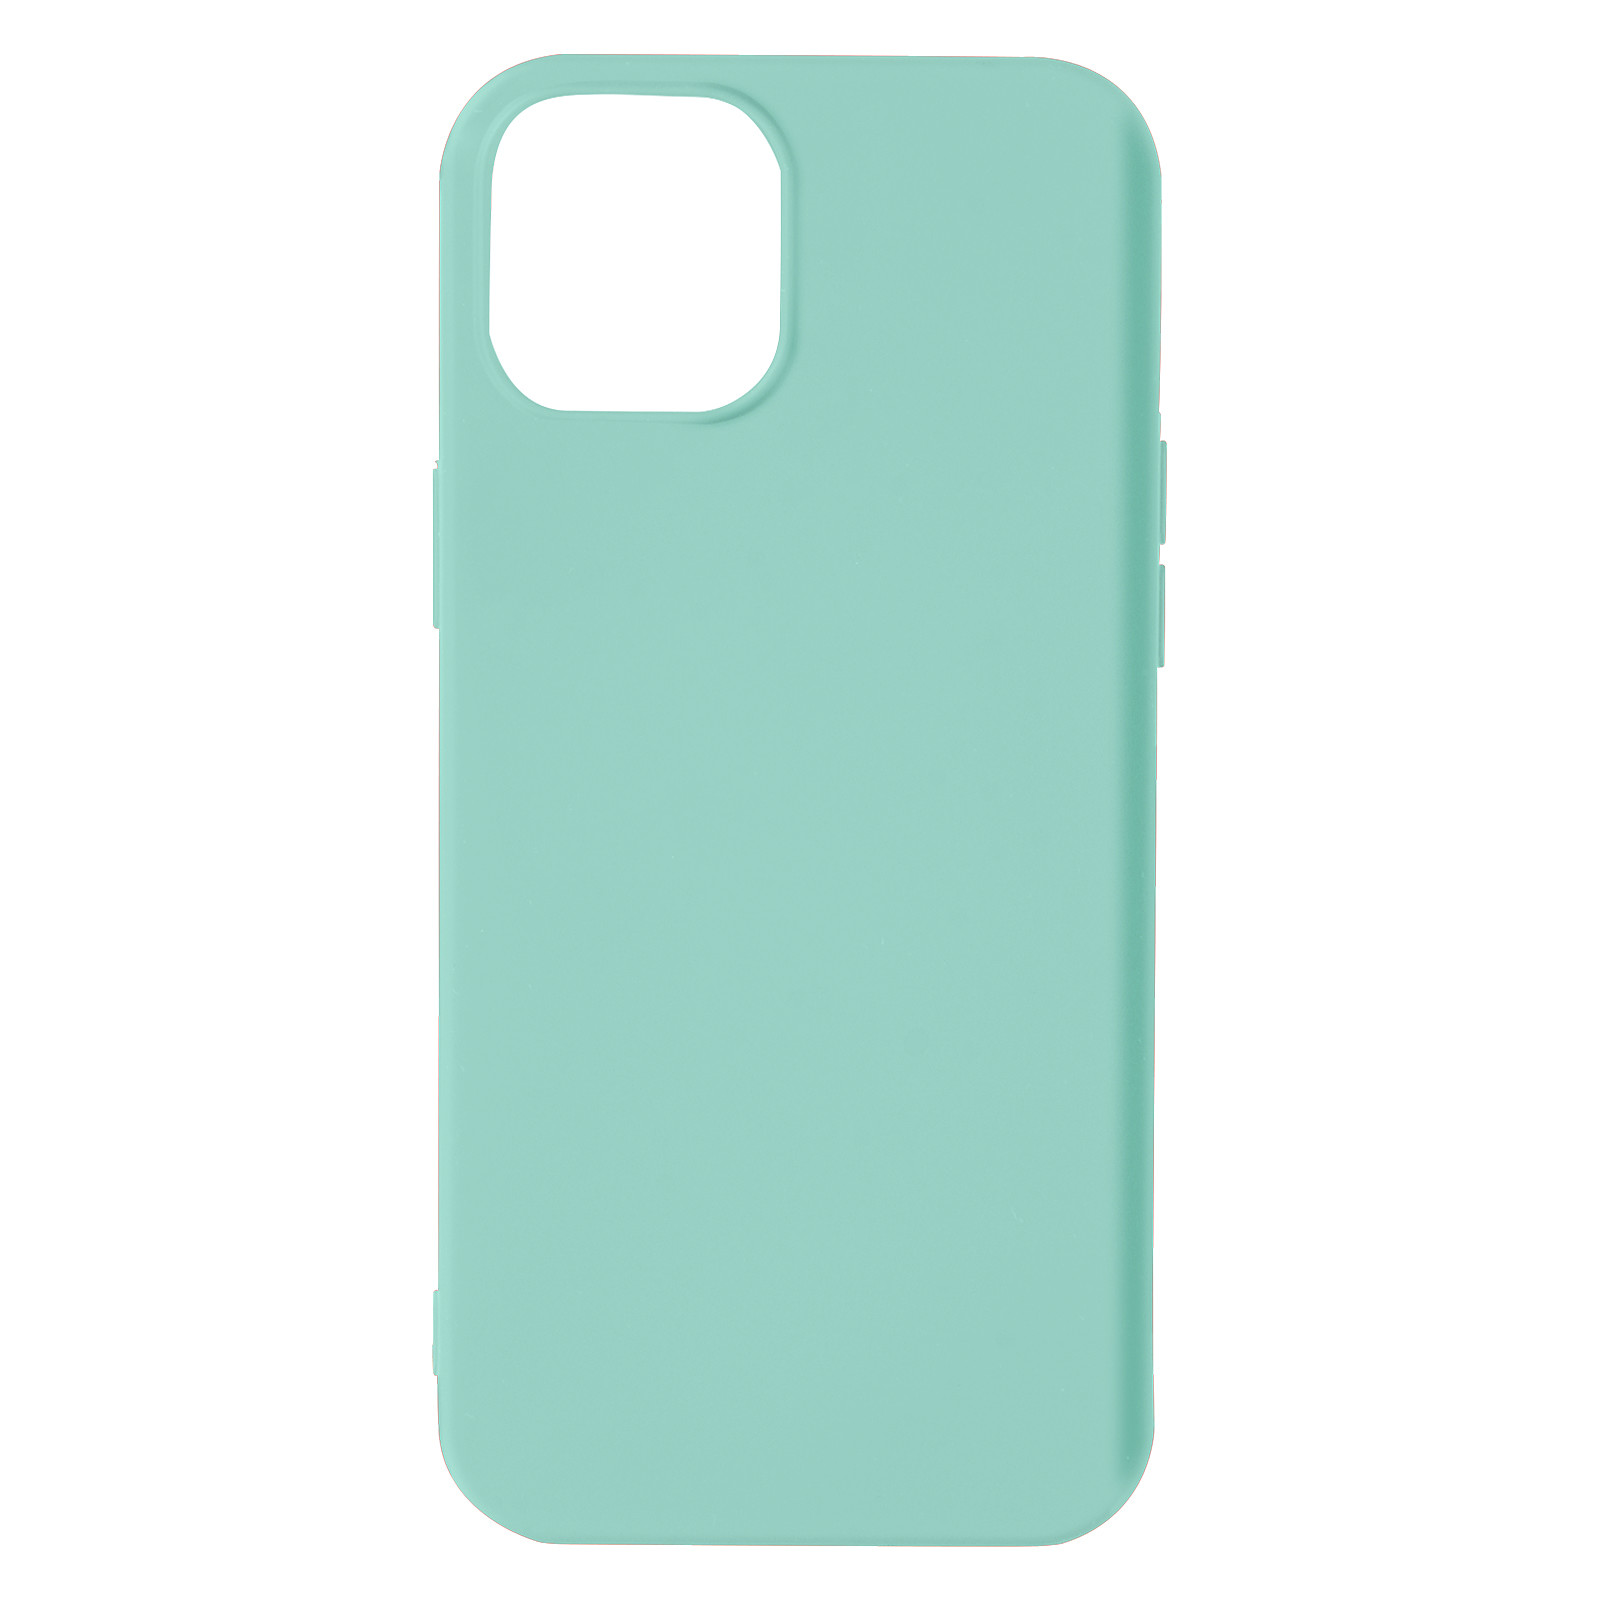 Avizar Coque pour iPhone 13 Mini Silicone Semi-rigide Finition Soft-touch Fine turquoise - Coque telephone Avizar